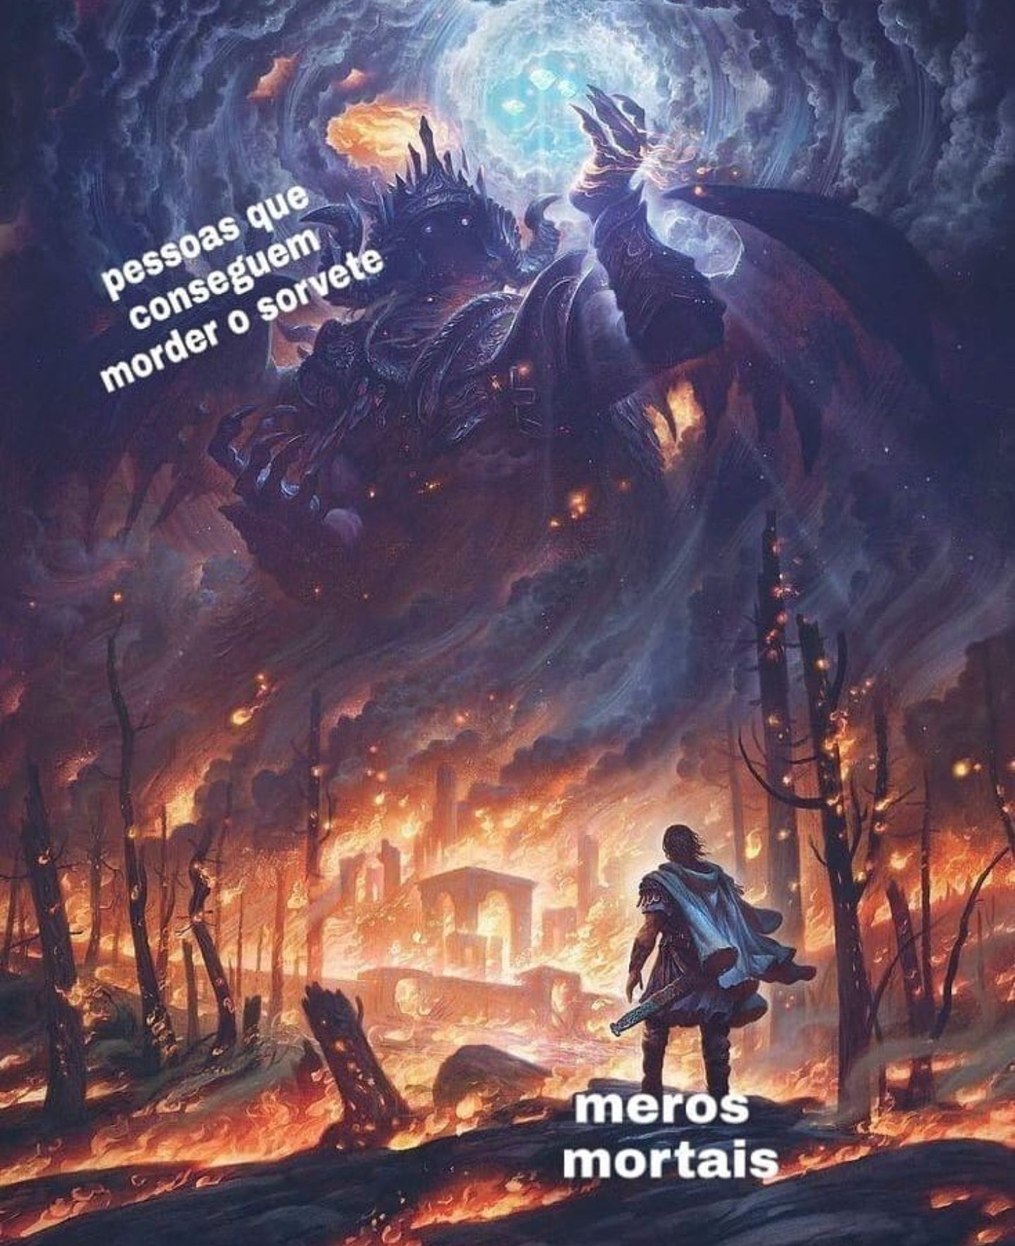 Only meros - meme